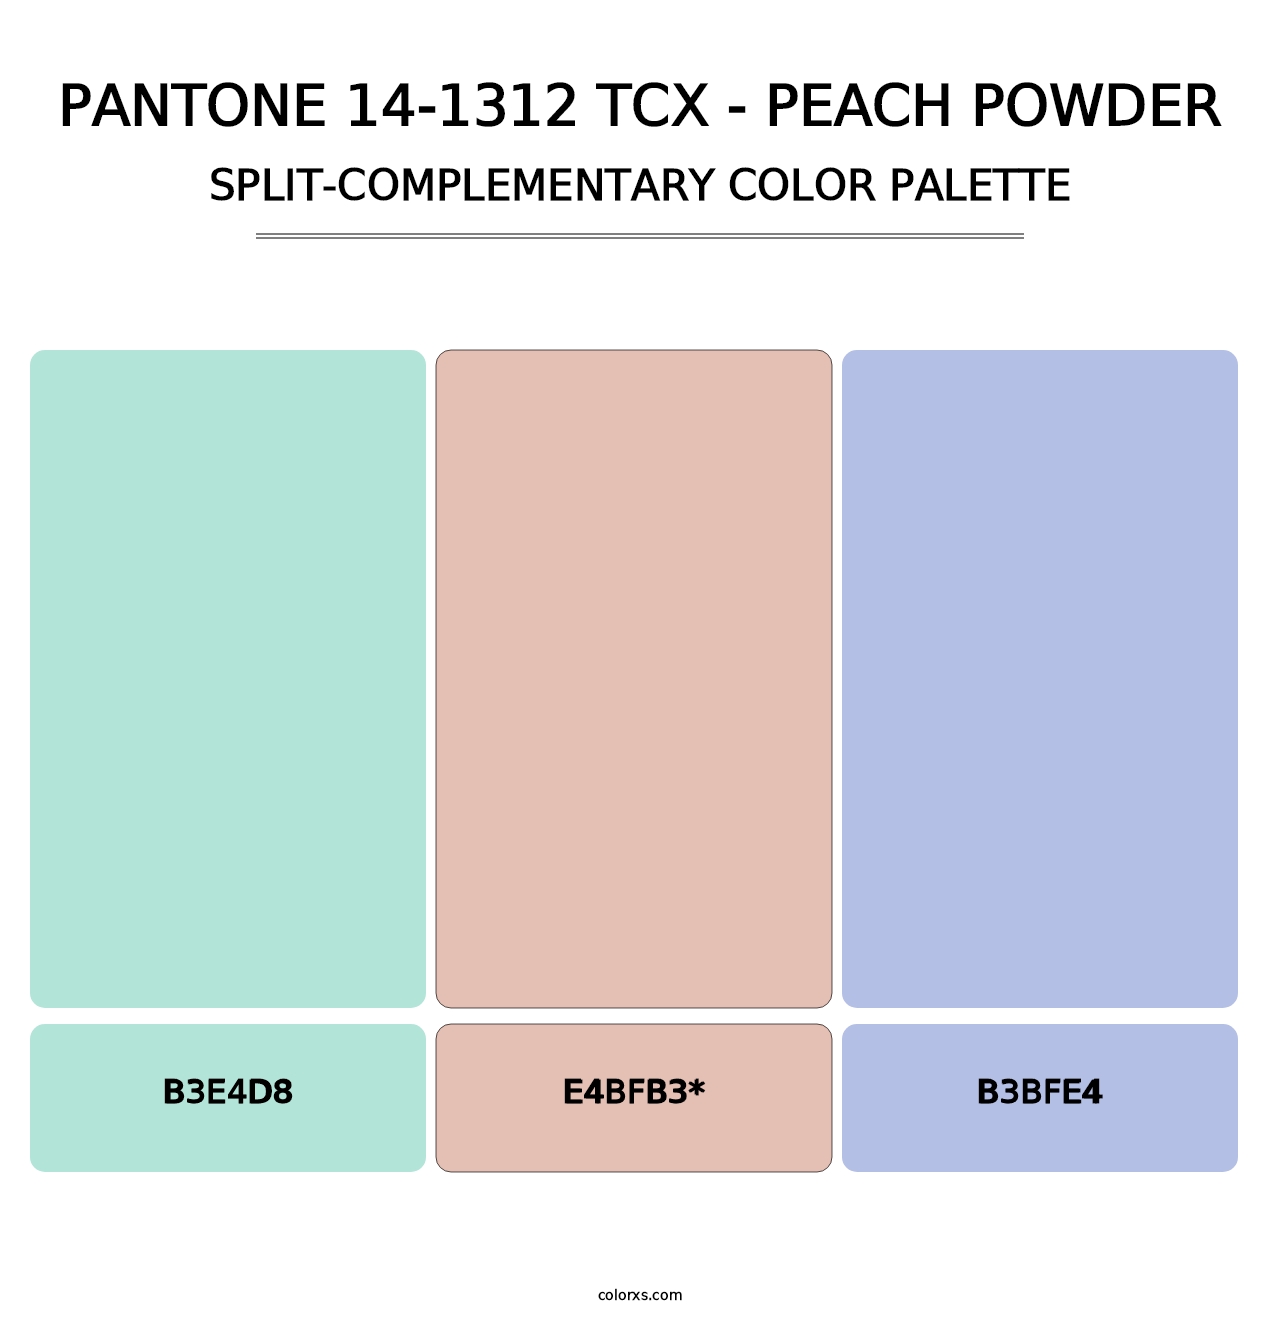 PANTONE 14-1312 TCX - Peach Powder - Split-Complementary Color Palette